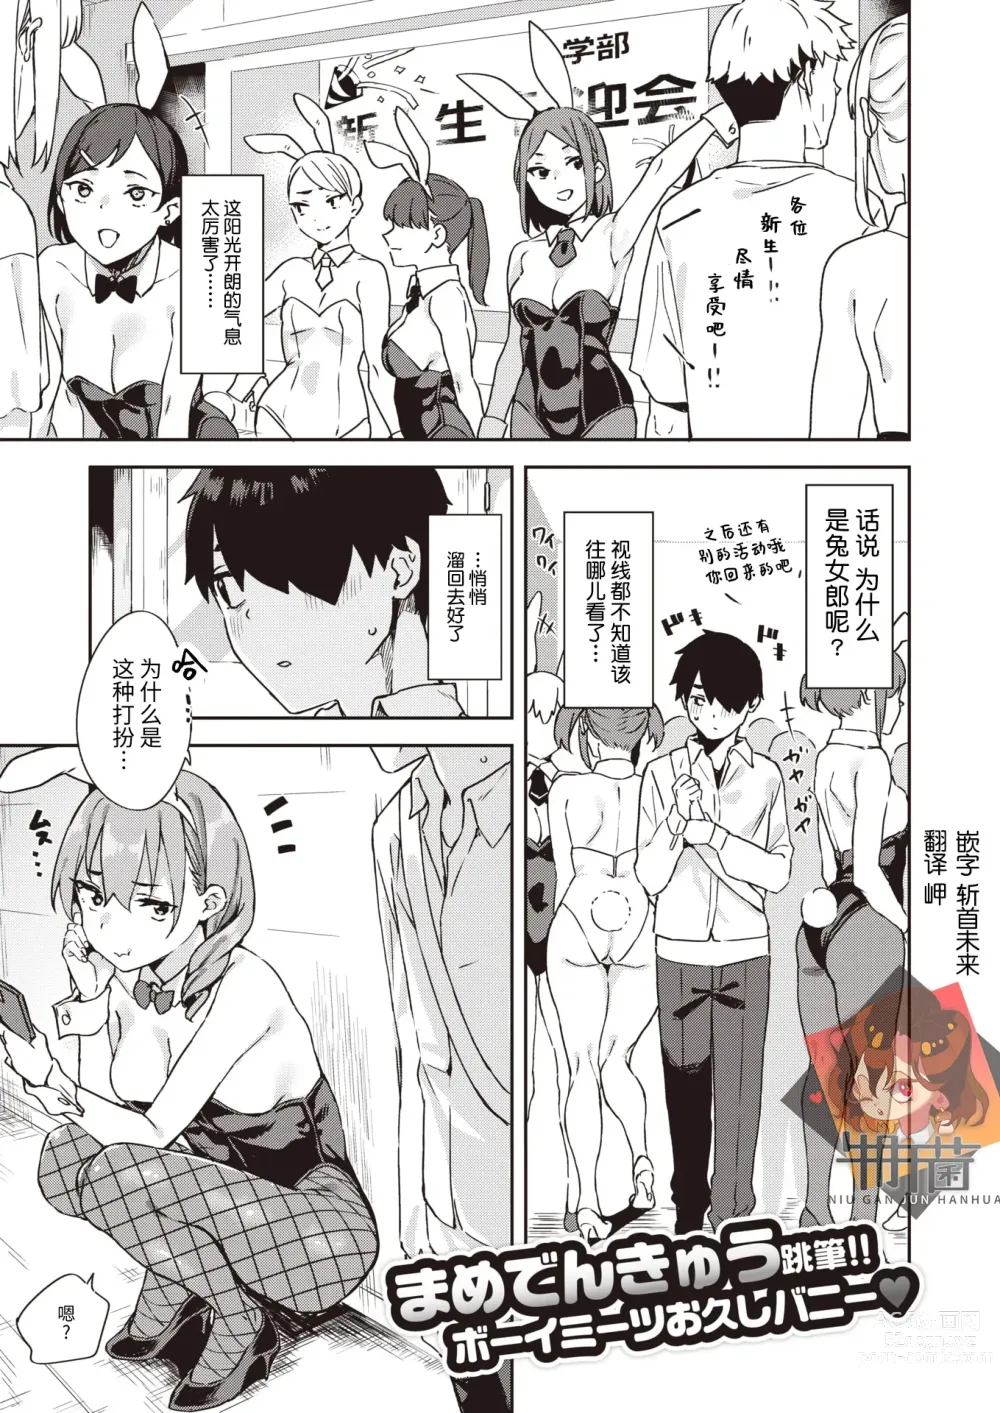 Page 1 of manga Itto o Oikakete